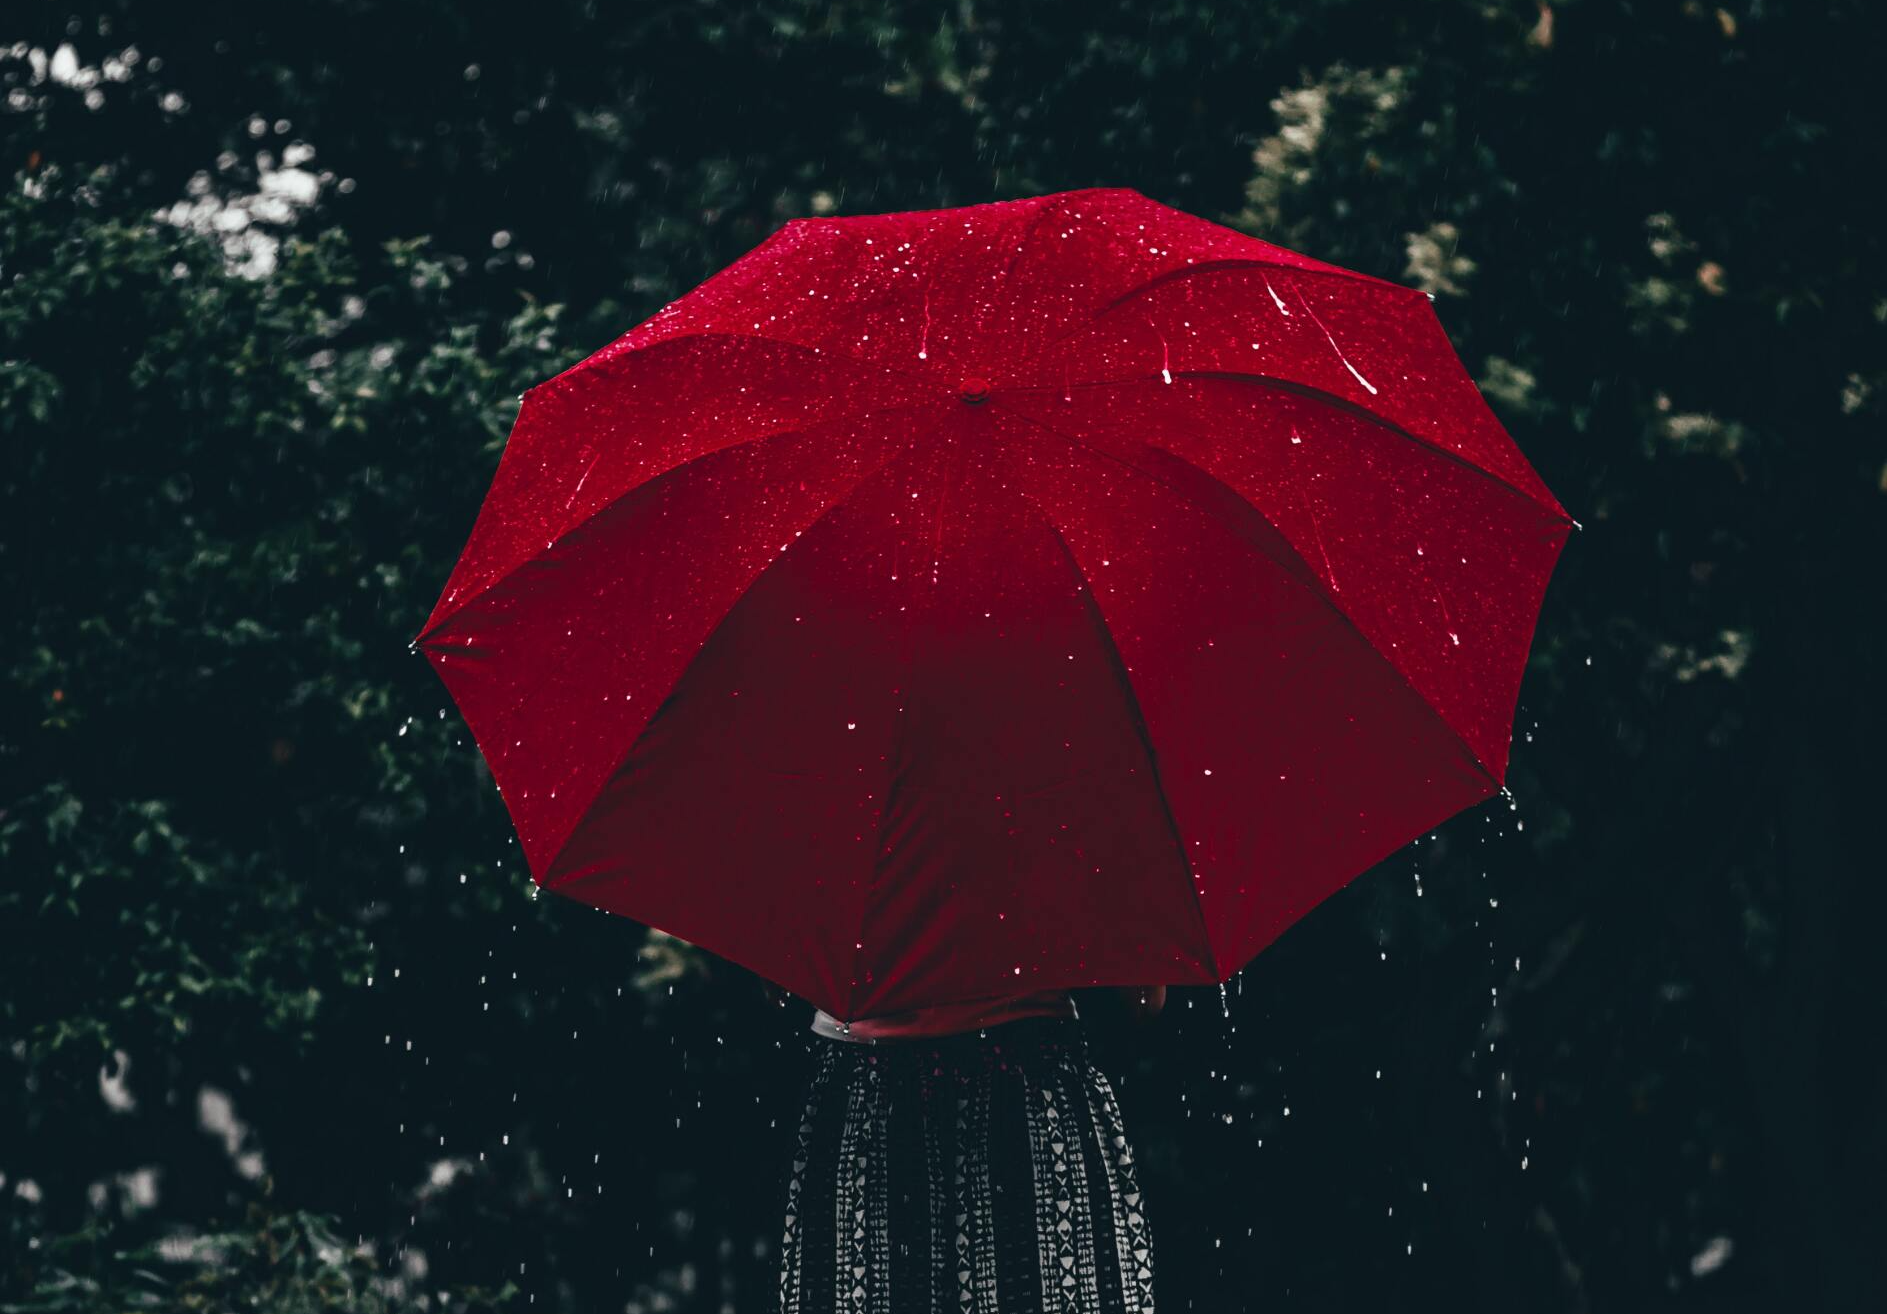 Roter Regenschirm verdeckt eine Person - alles in schwarz weiß bis auf Regenschirm